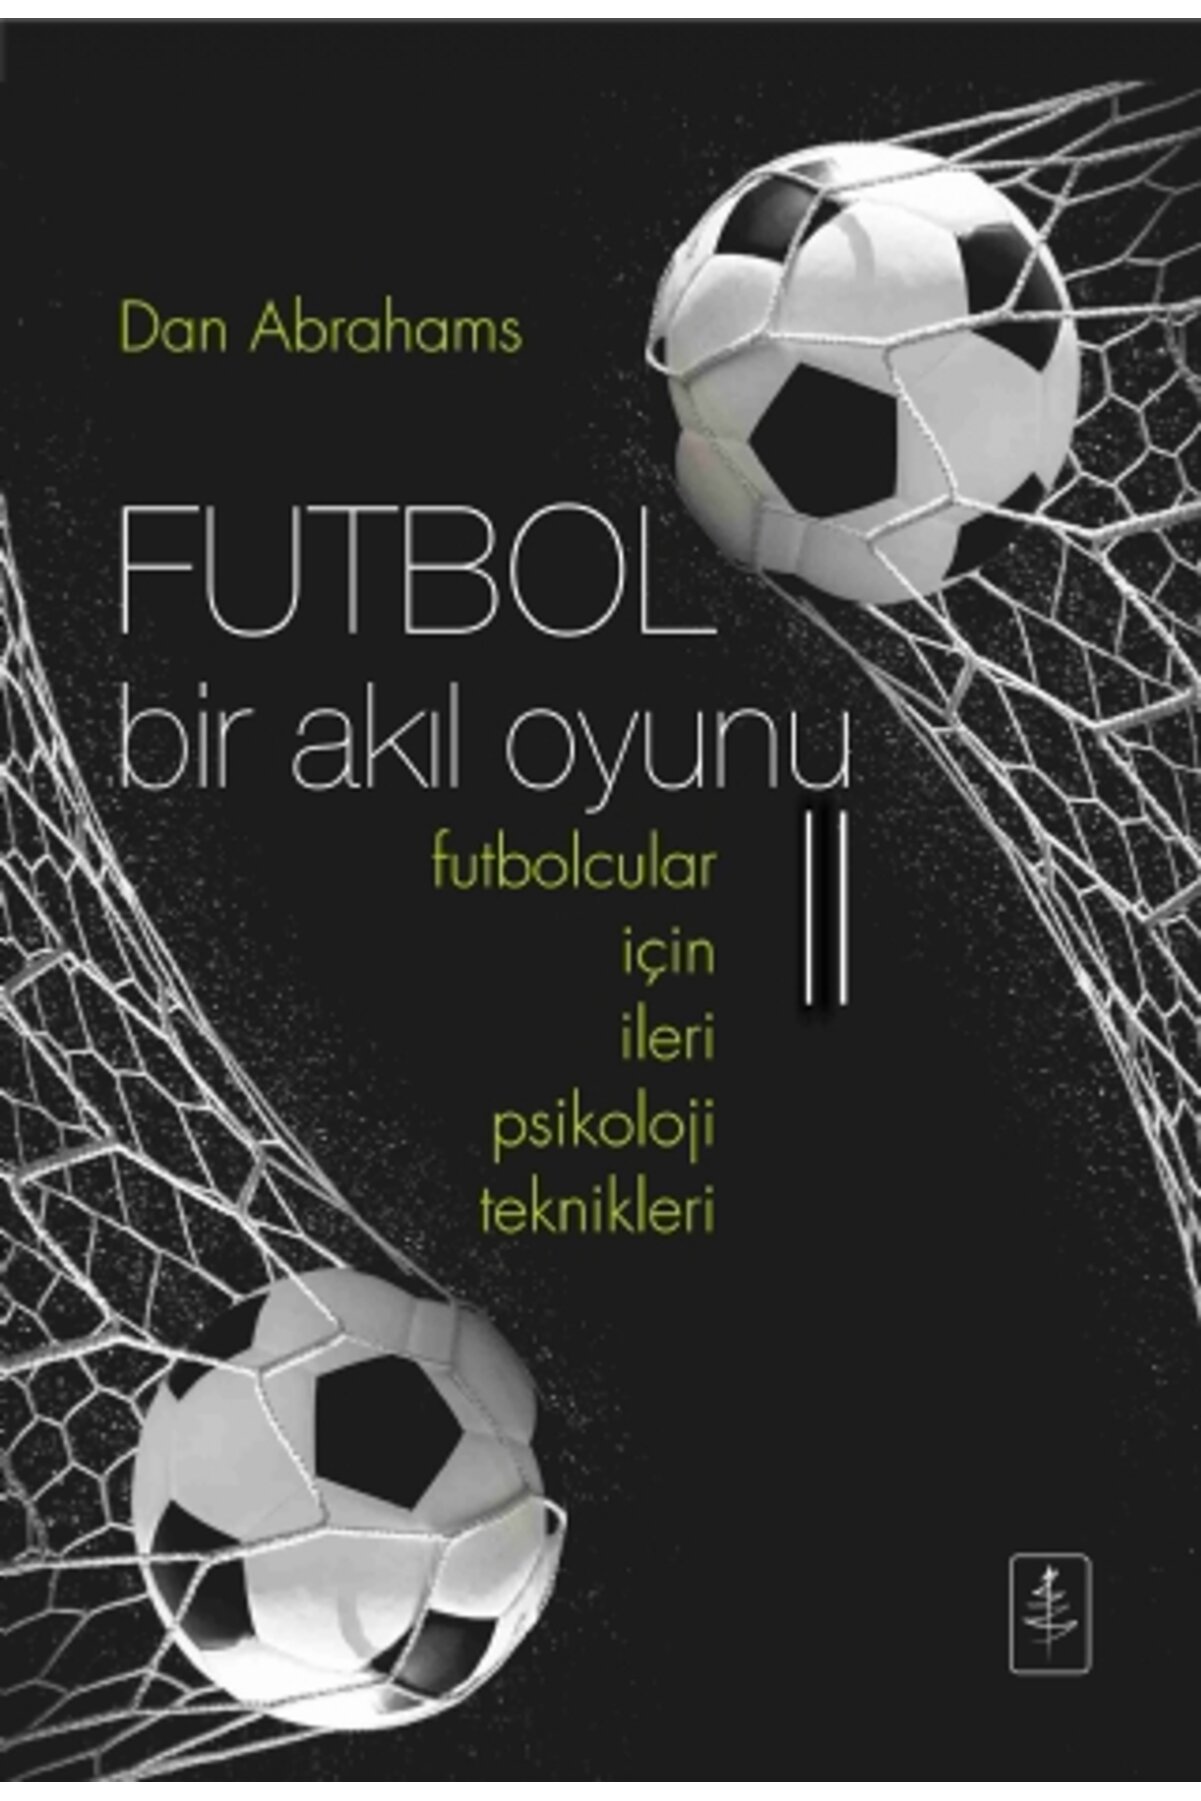 Nobel Yaşam Futbol Bir Akıl Oyunu Ii - Futbolcular I?çin I?leri Psikoloji Teknikleri - Soccer Tough Ii Advance